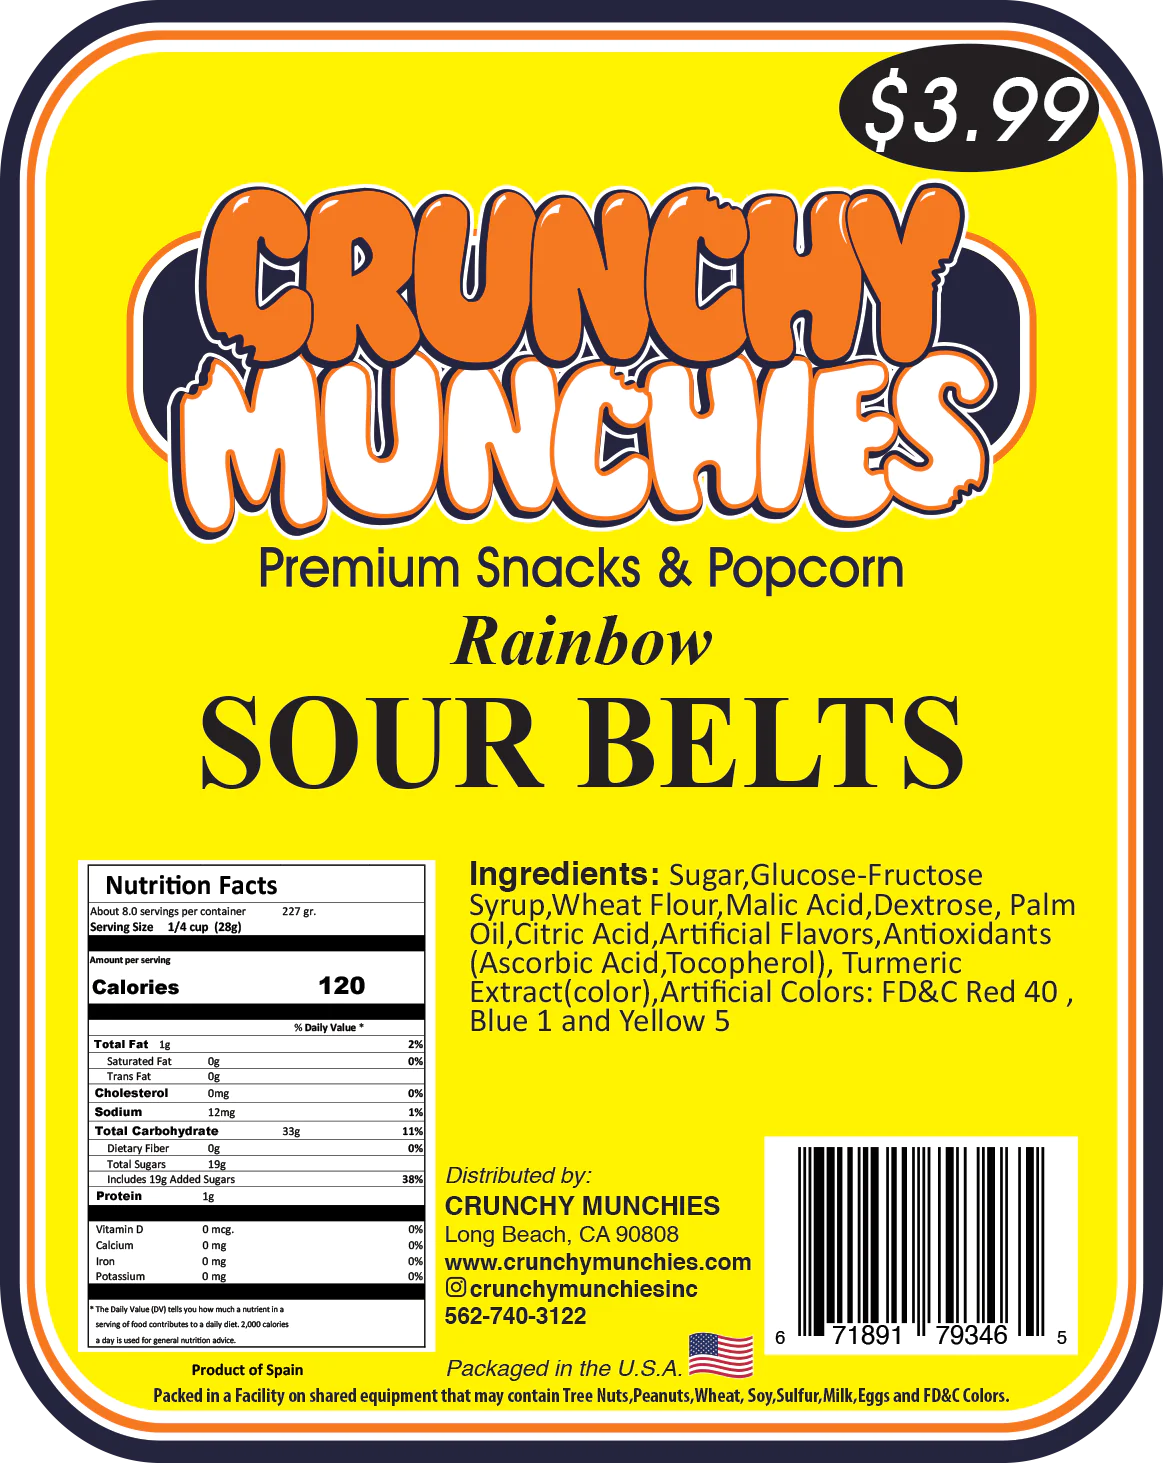 Rainbow Sour Belts- Crunchy Munchies